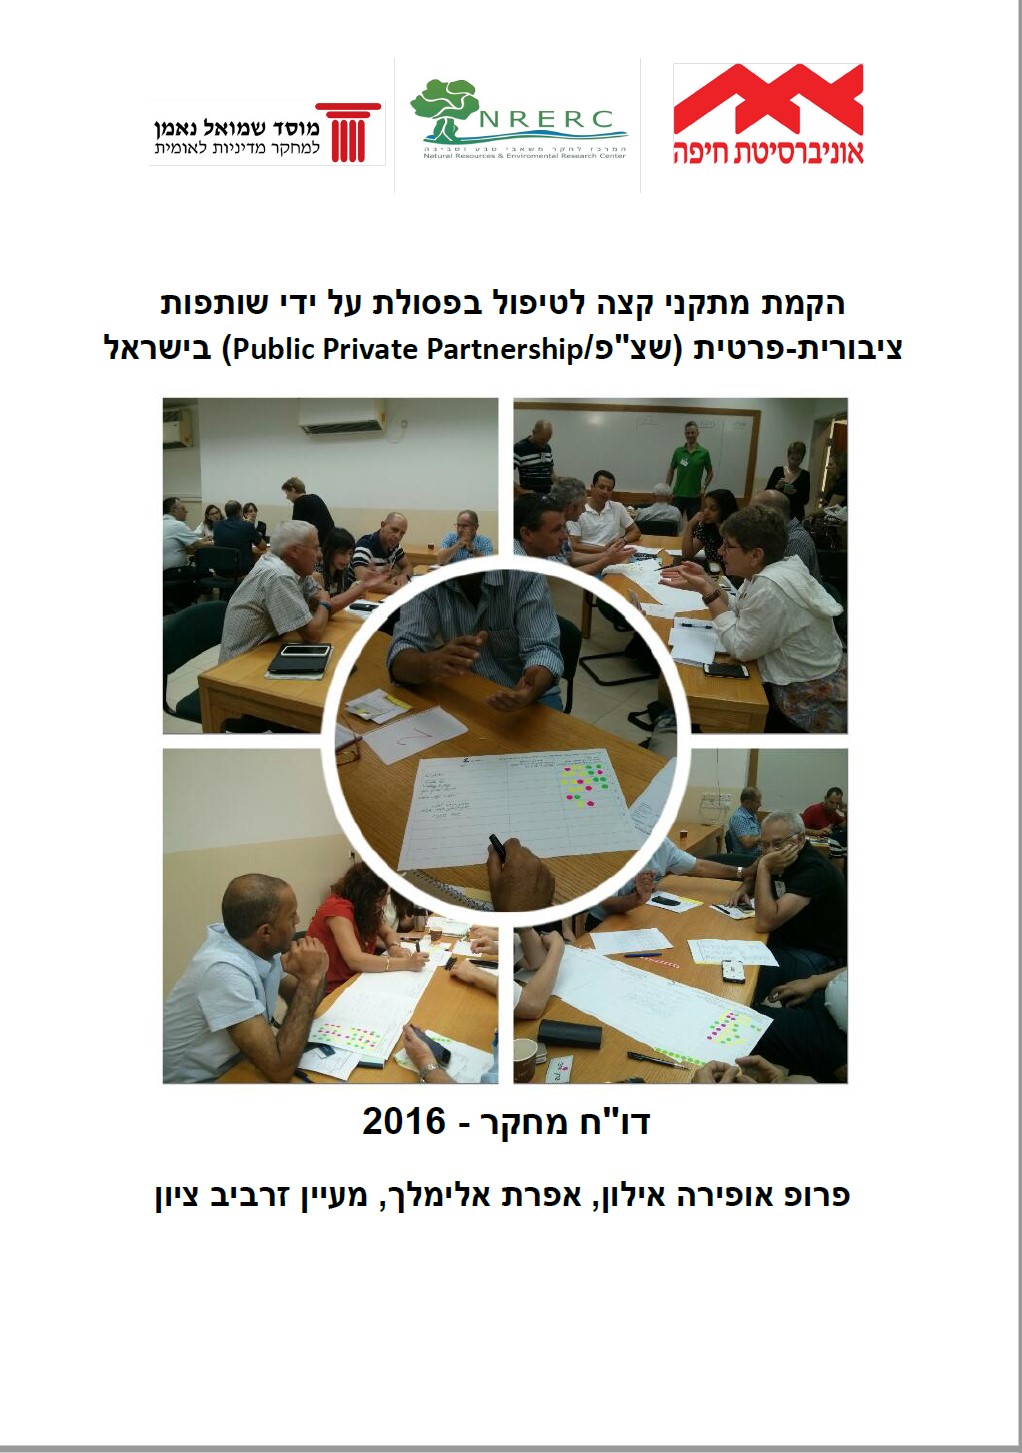 הקמת מתקני קצה לטיפול בפסולת על ידי שותפות ציבורית-פרטית (שצ"פ/Public Private Partnership) בישראל